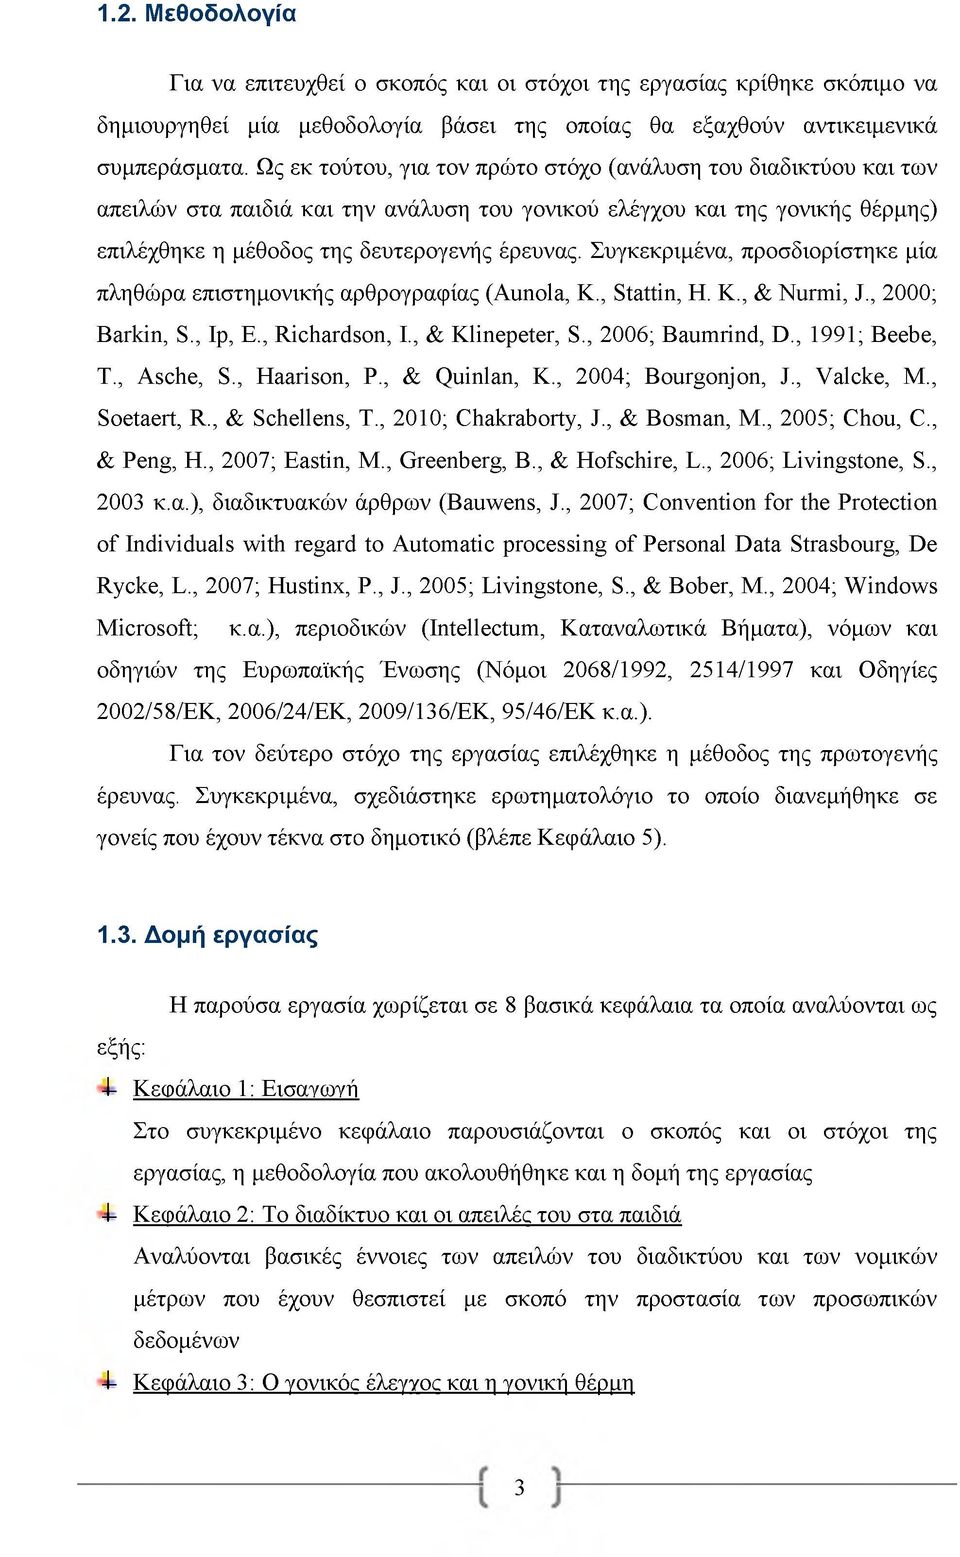 Συγκεκριμένα, προσδιορίστηκε μία πληθώρα επιστημονικής αρθρογραφίας (Aunola, K., Stattin, H. K., & Nurmi, J., 2000; Barkin, S., Ip, E., Richardson, I., & Klinepeter, S., 2006; Baumrind, D.